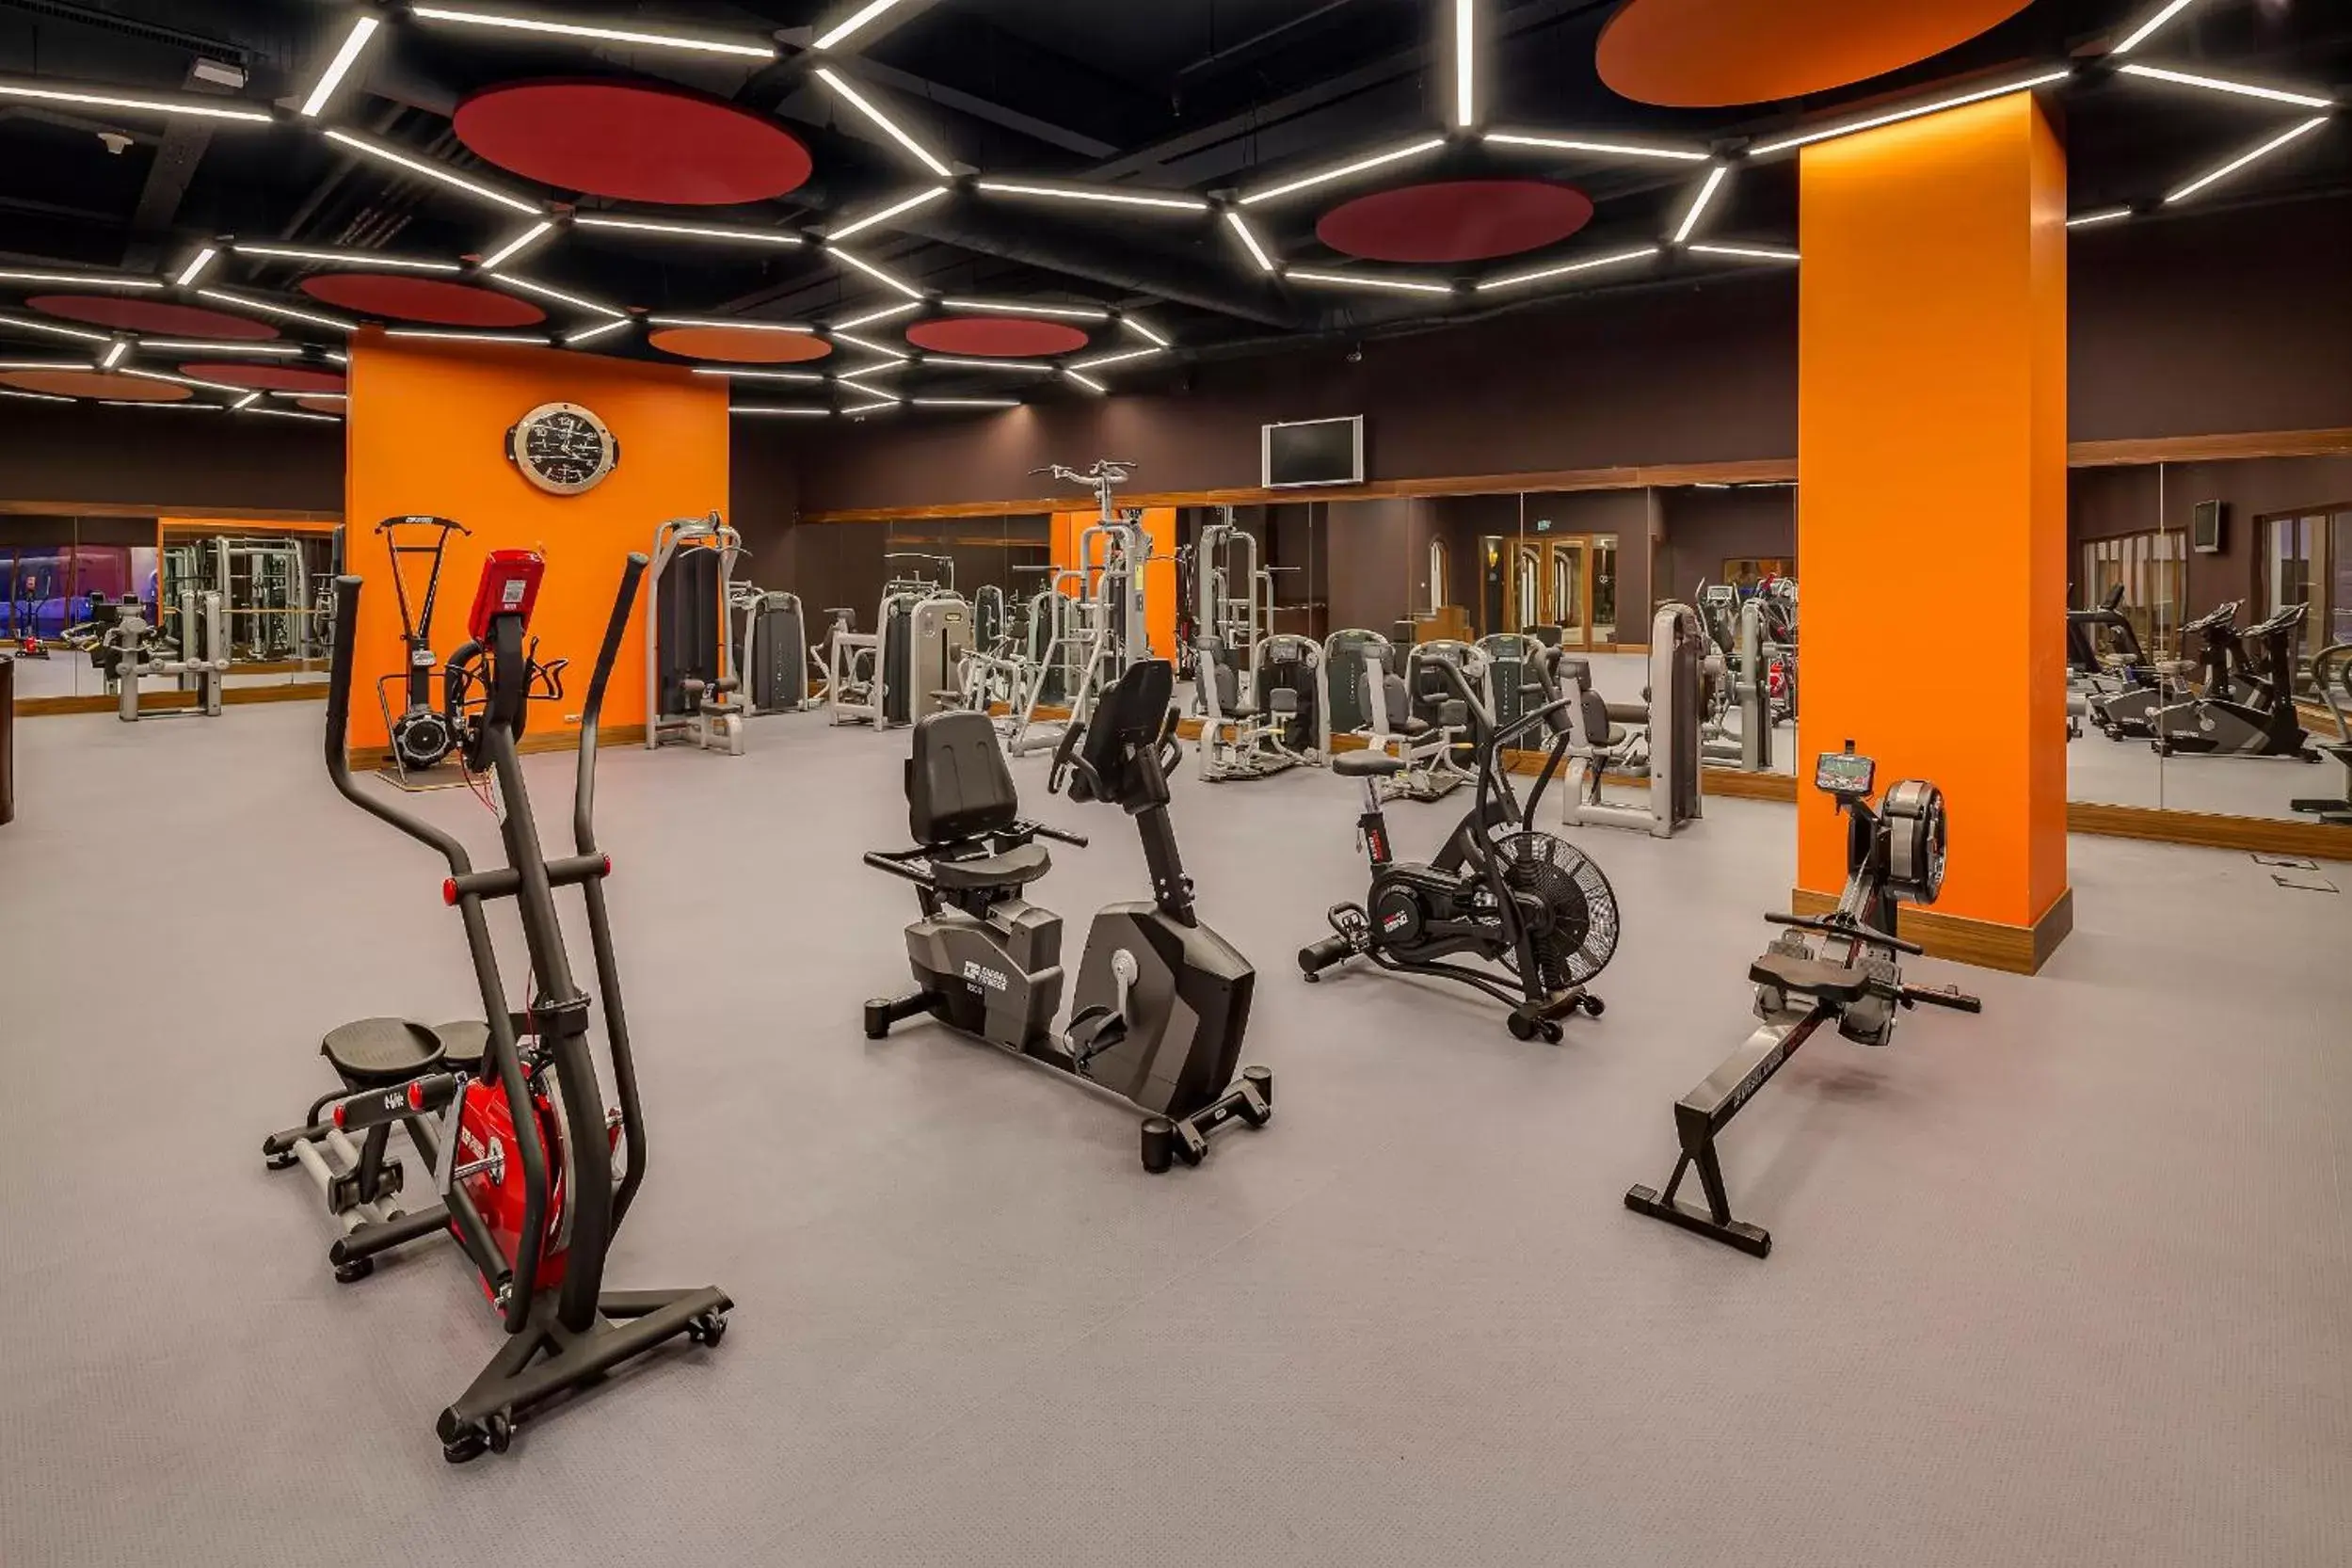 Fitness centre/facilities, Fitness Center/Facilities in Divan Ankara